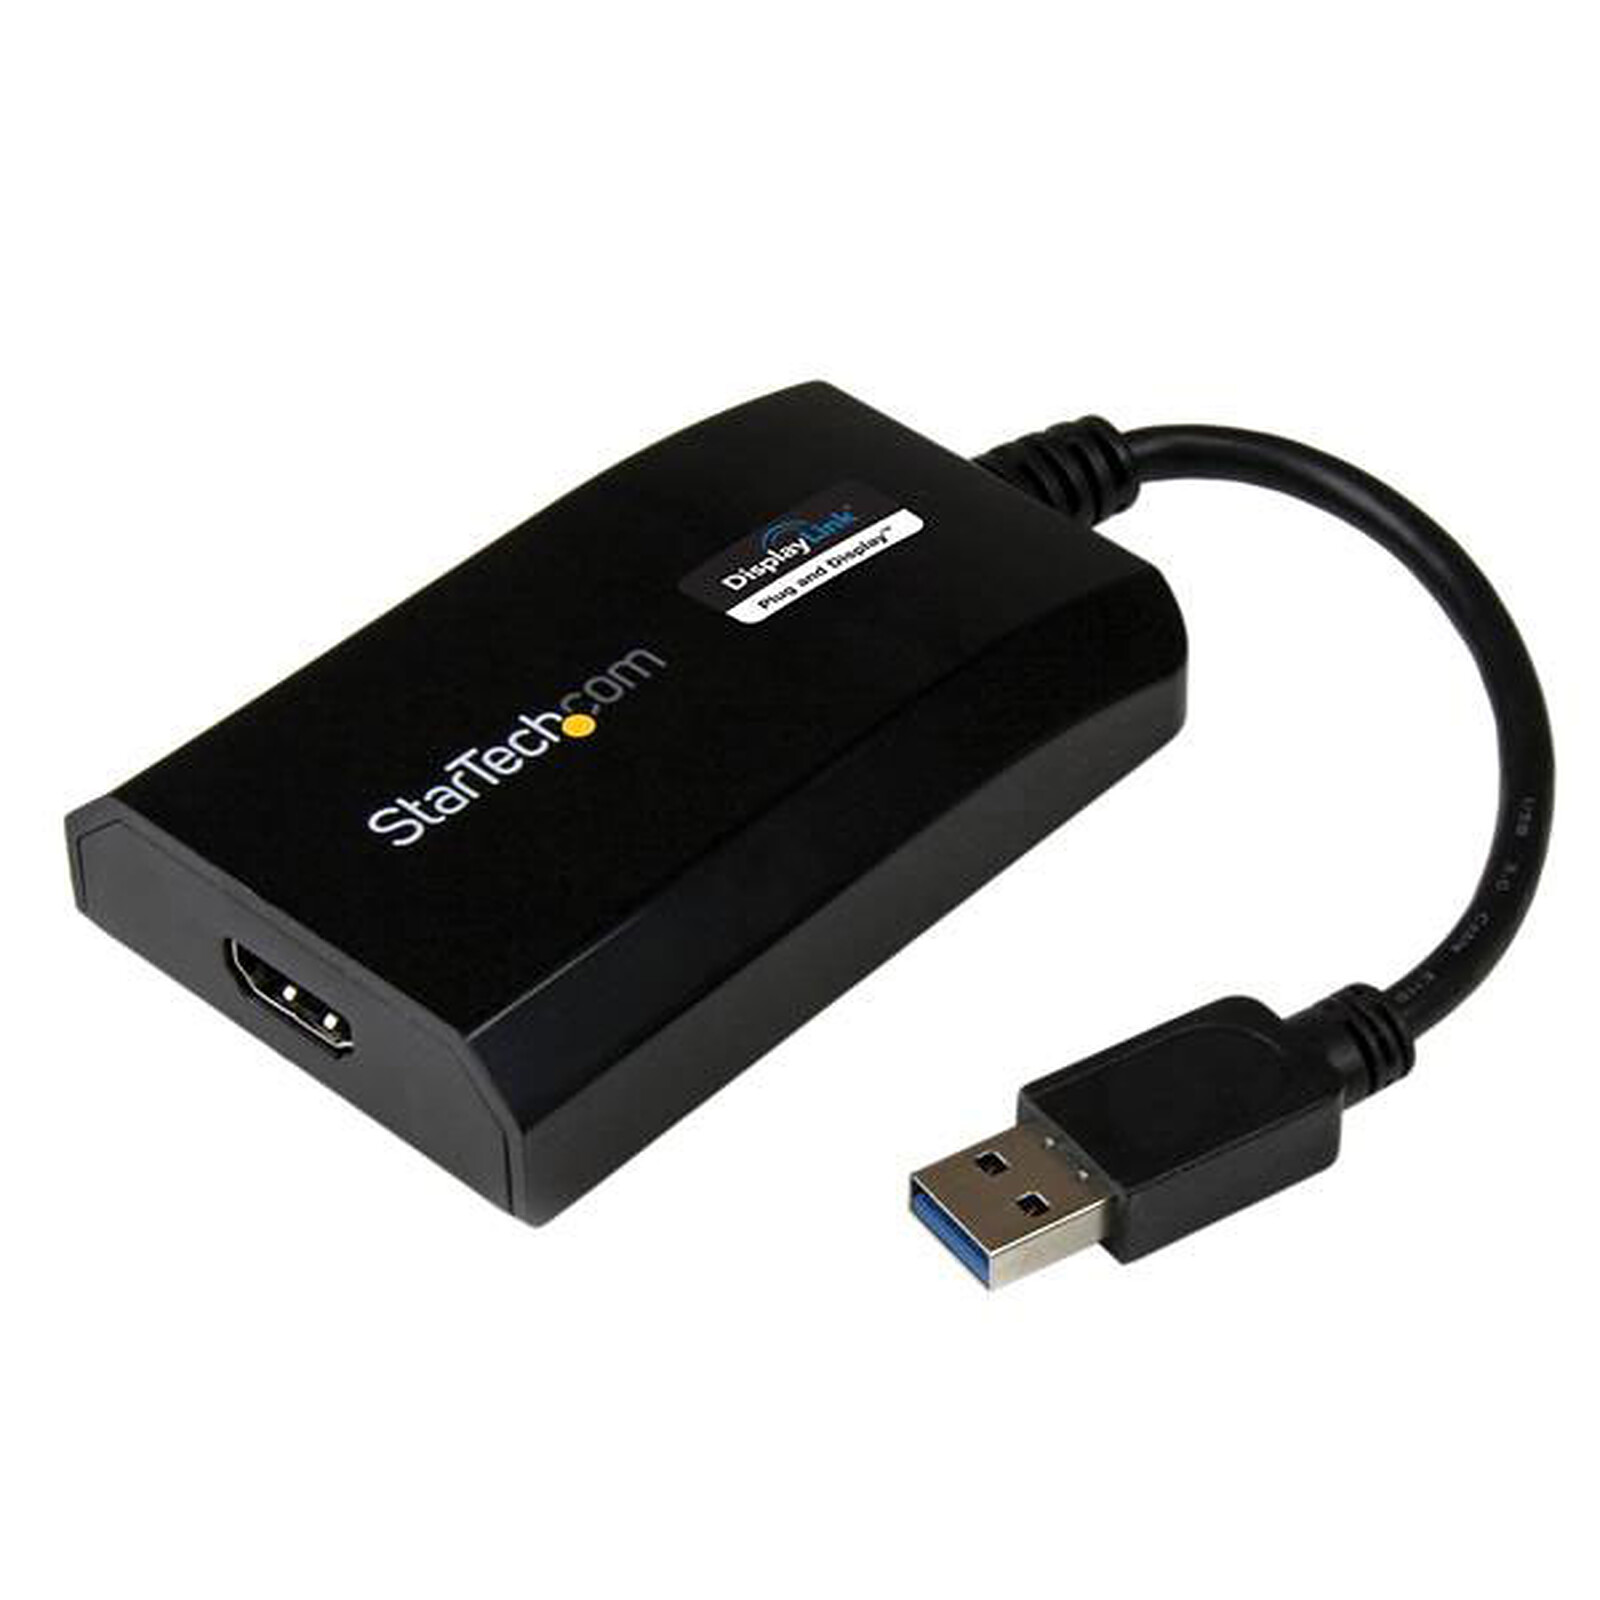 StarTech.com Adaptateur multi-écrans USB 3.0 vers HDMI 1080p - Mac et PC -  Certifié DisplayLink - HDMI - Garantie 3 ans LDLC